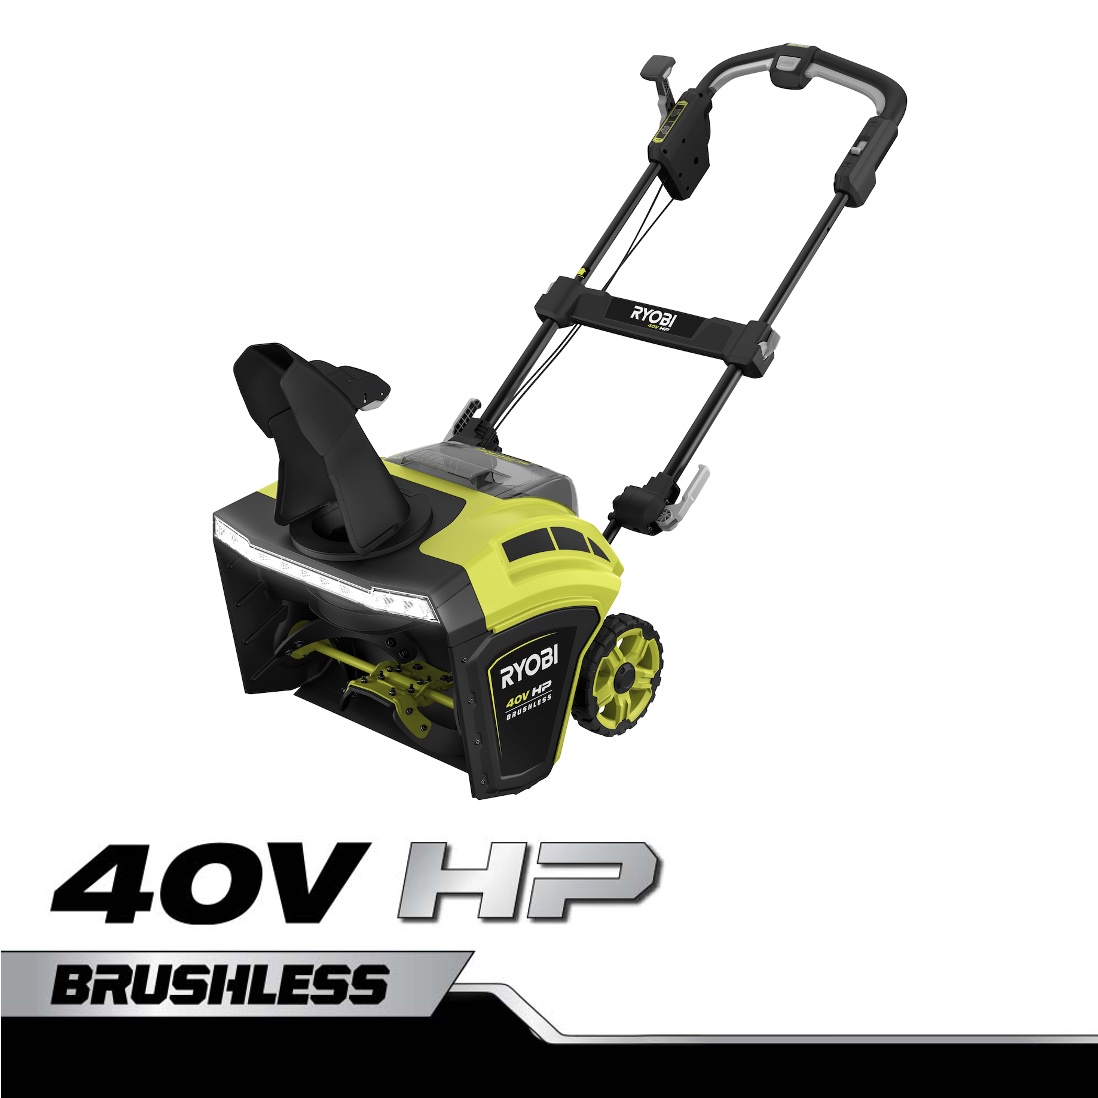 40V 20-inch Brushless Cordless Snow Thrower | Greenworks